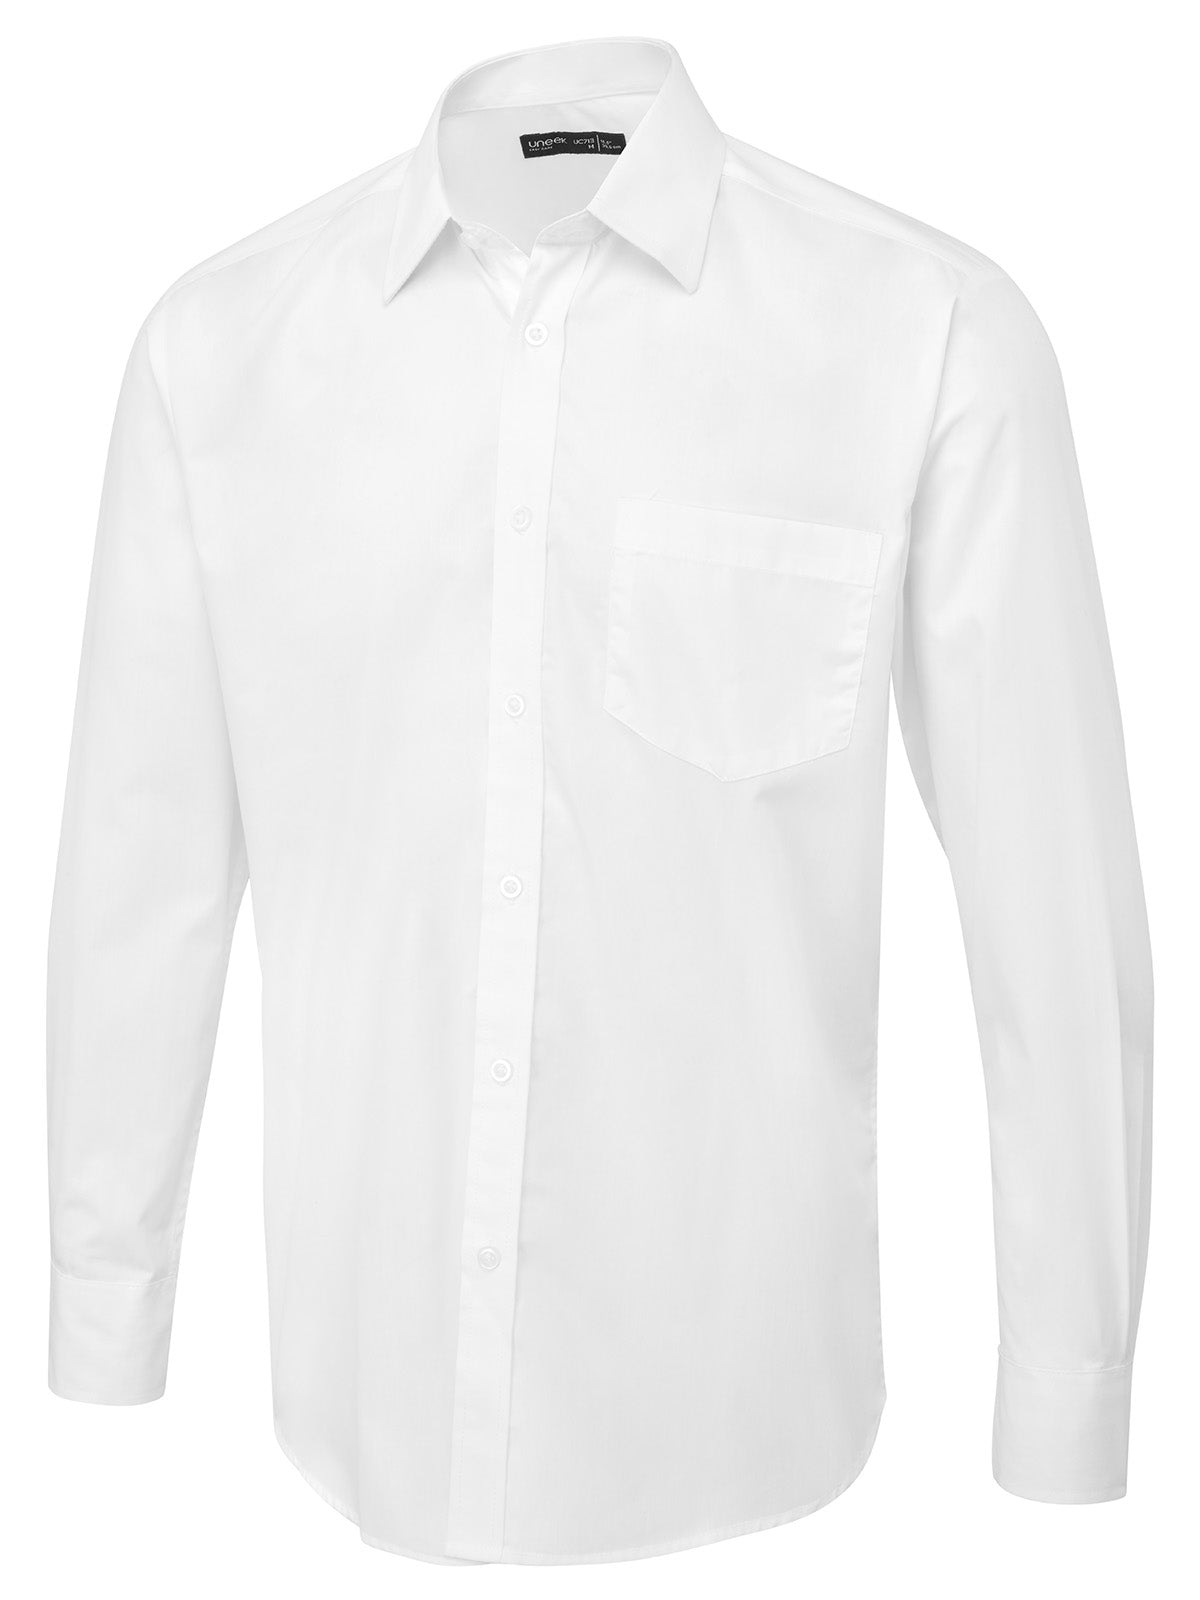 Uneek Men's Long Sleeve Poplin Shirt UC713 - White